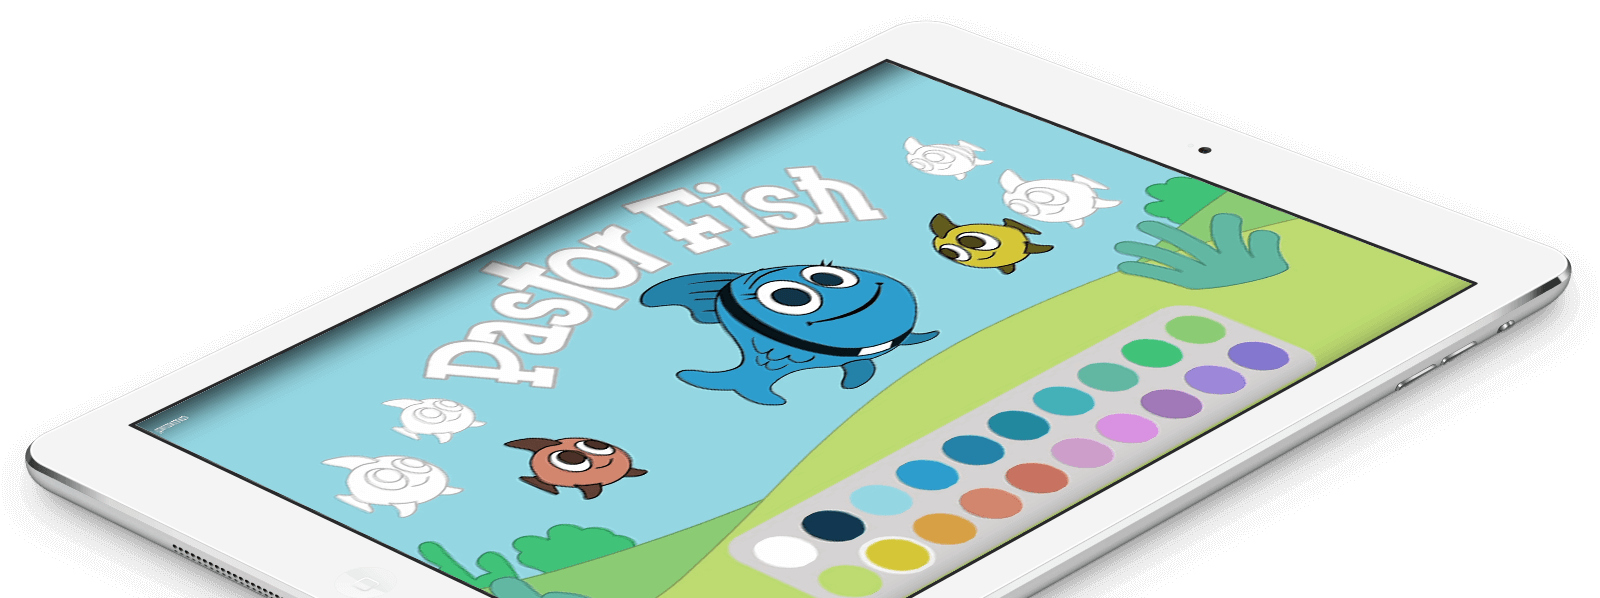 Pastor Fish App running on iPad